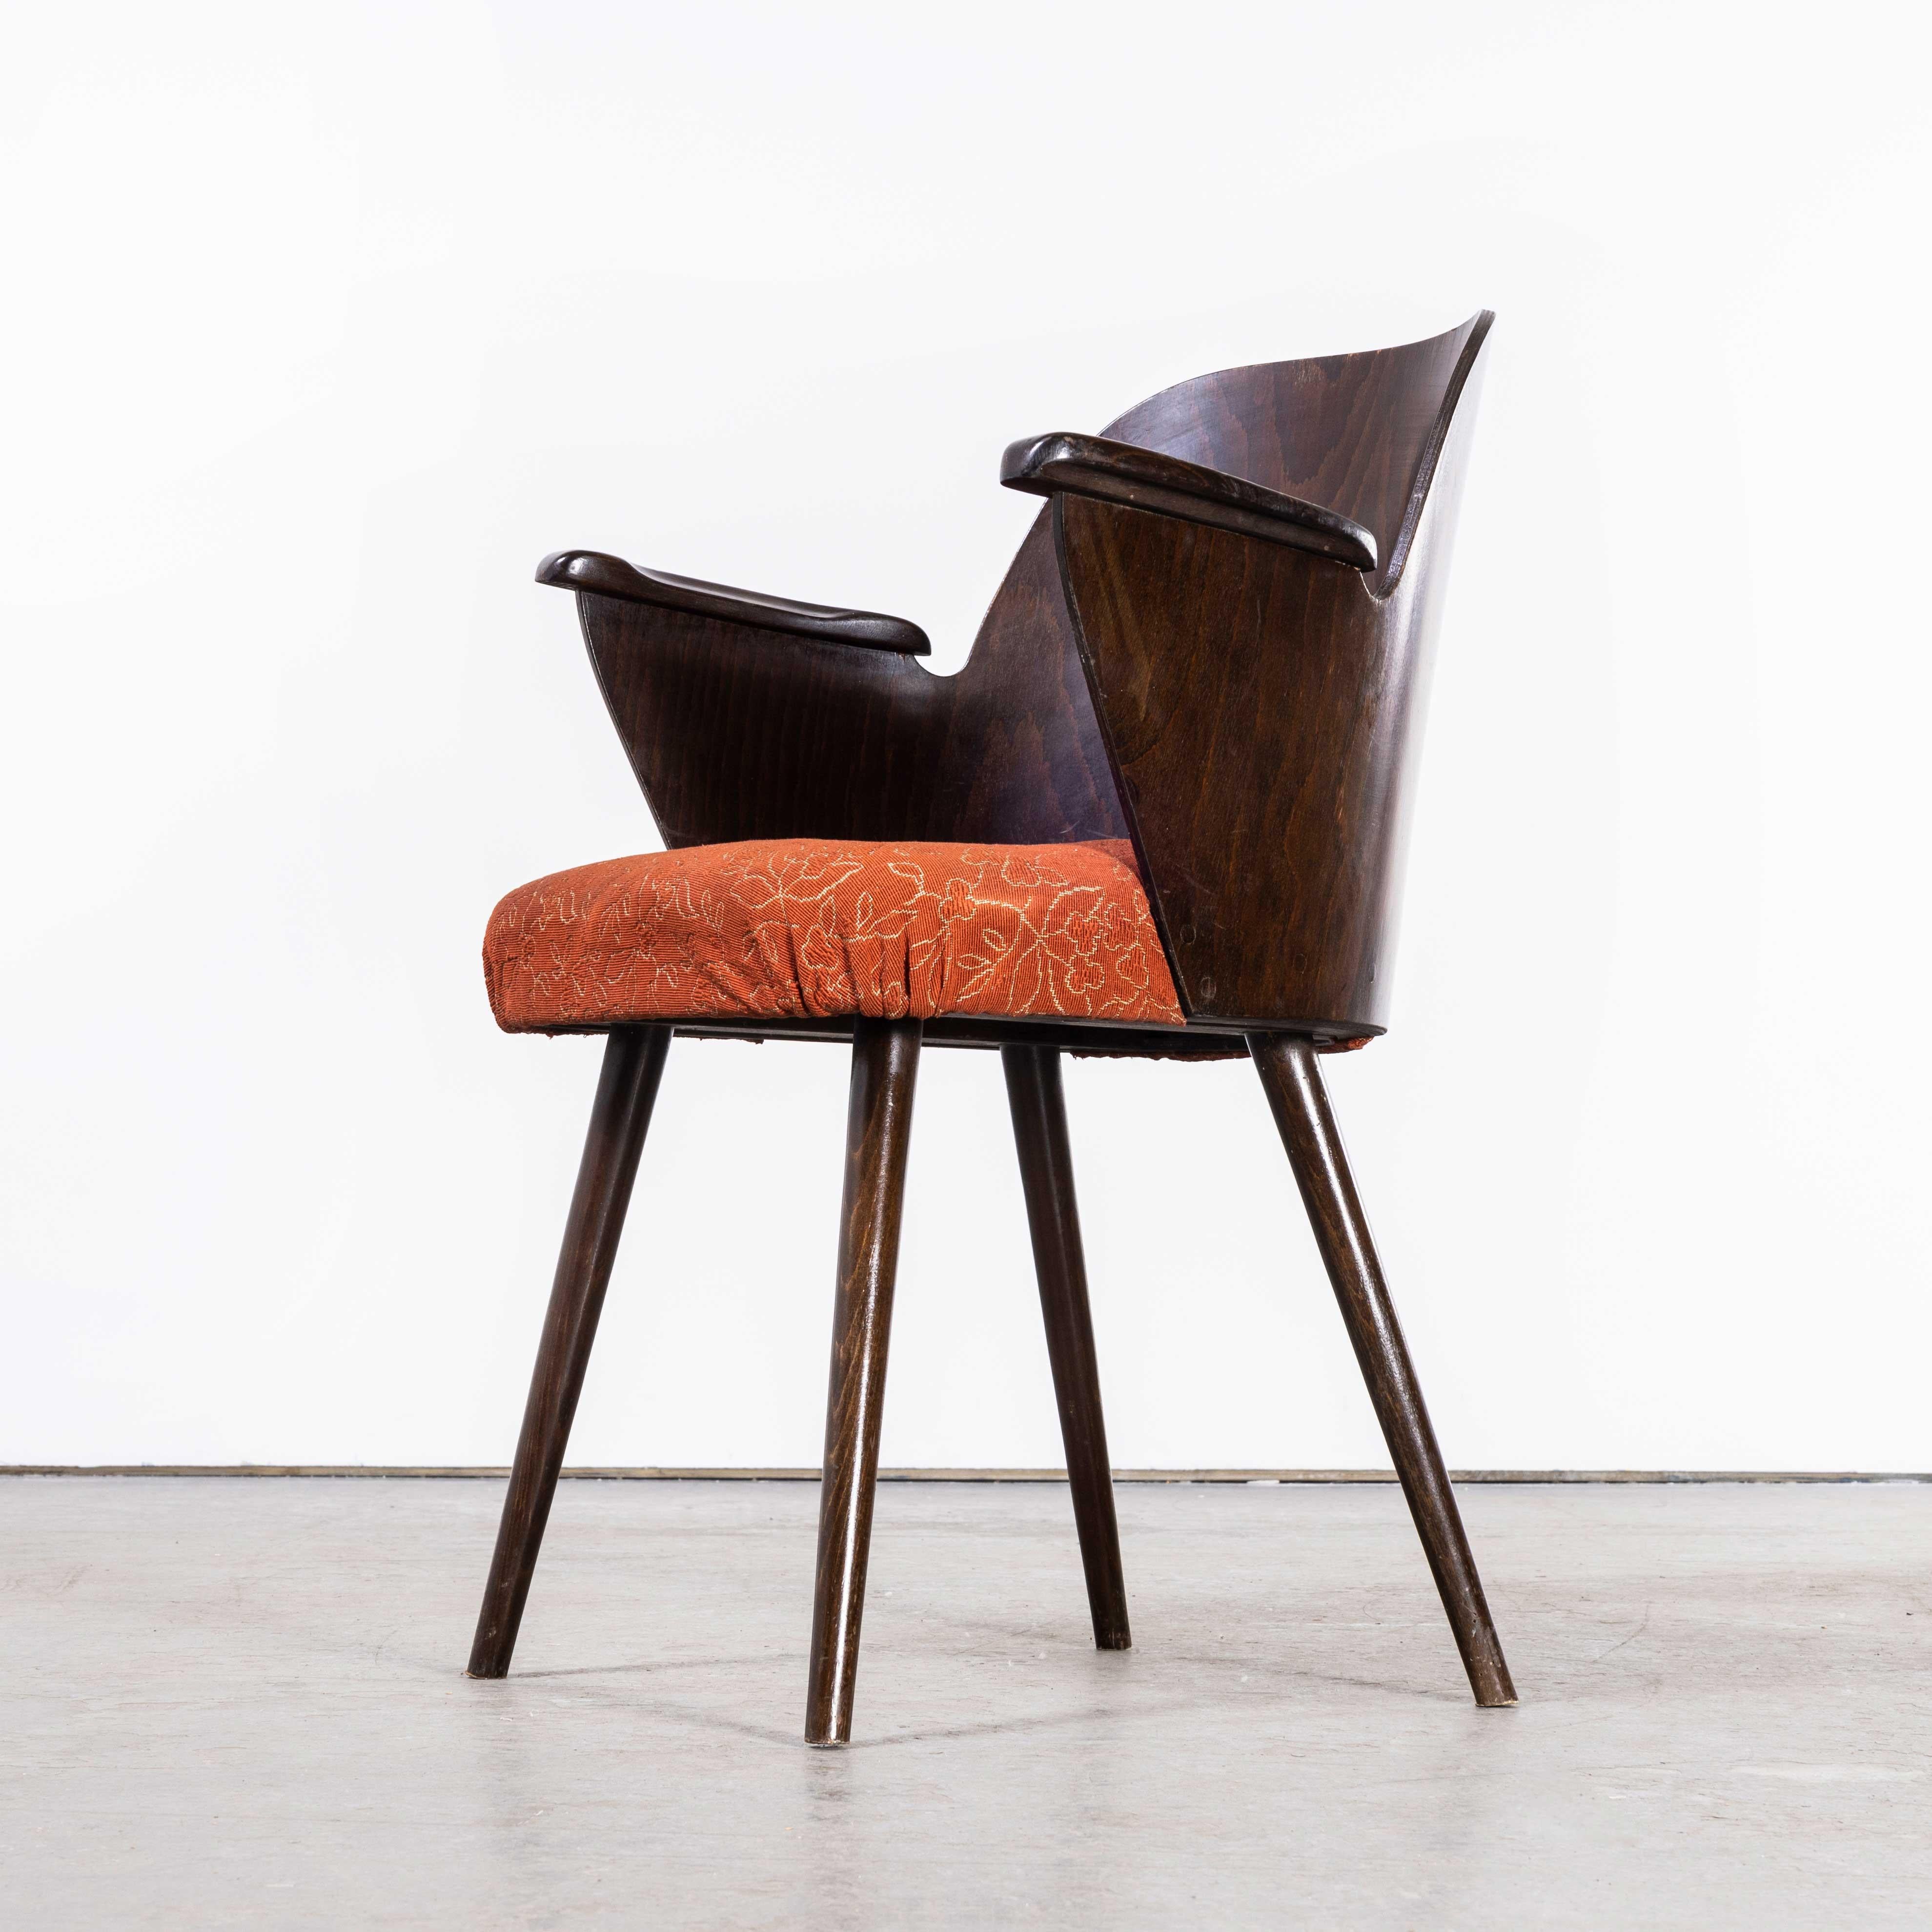 1950's Dark Walnut Upholstered Side Chair, Oswald Haerdt Model 515 '1923' For Sale 1